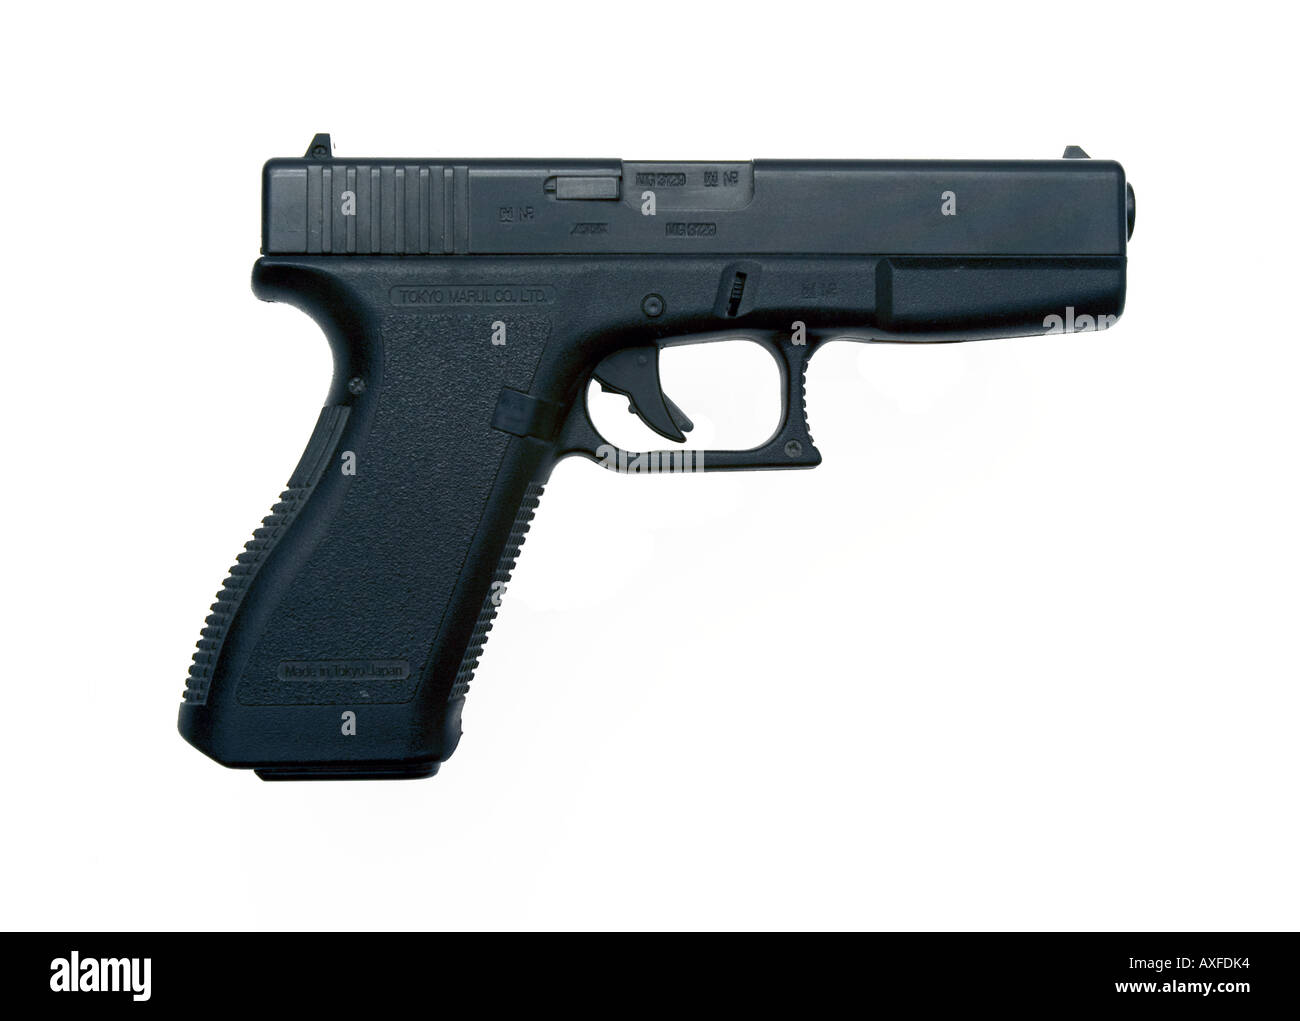 replica handgun glock 17 on white background Stock Photo